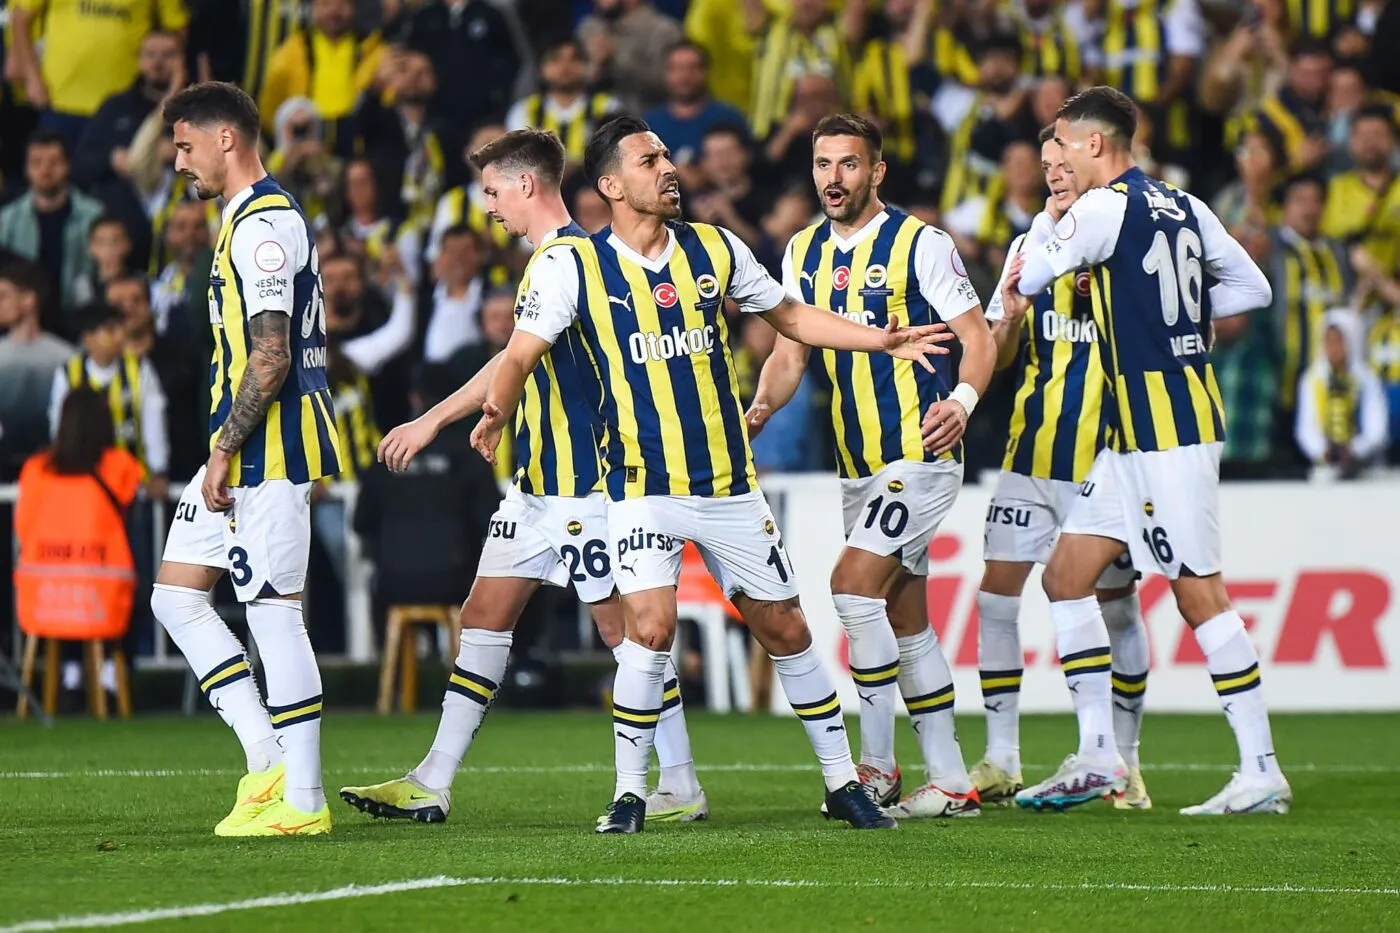 Fenerbahçe remporte le derby face à Beşiktaş